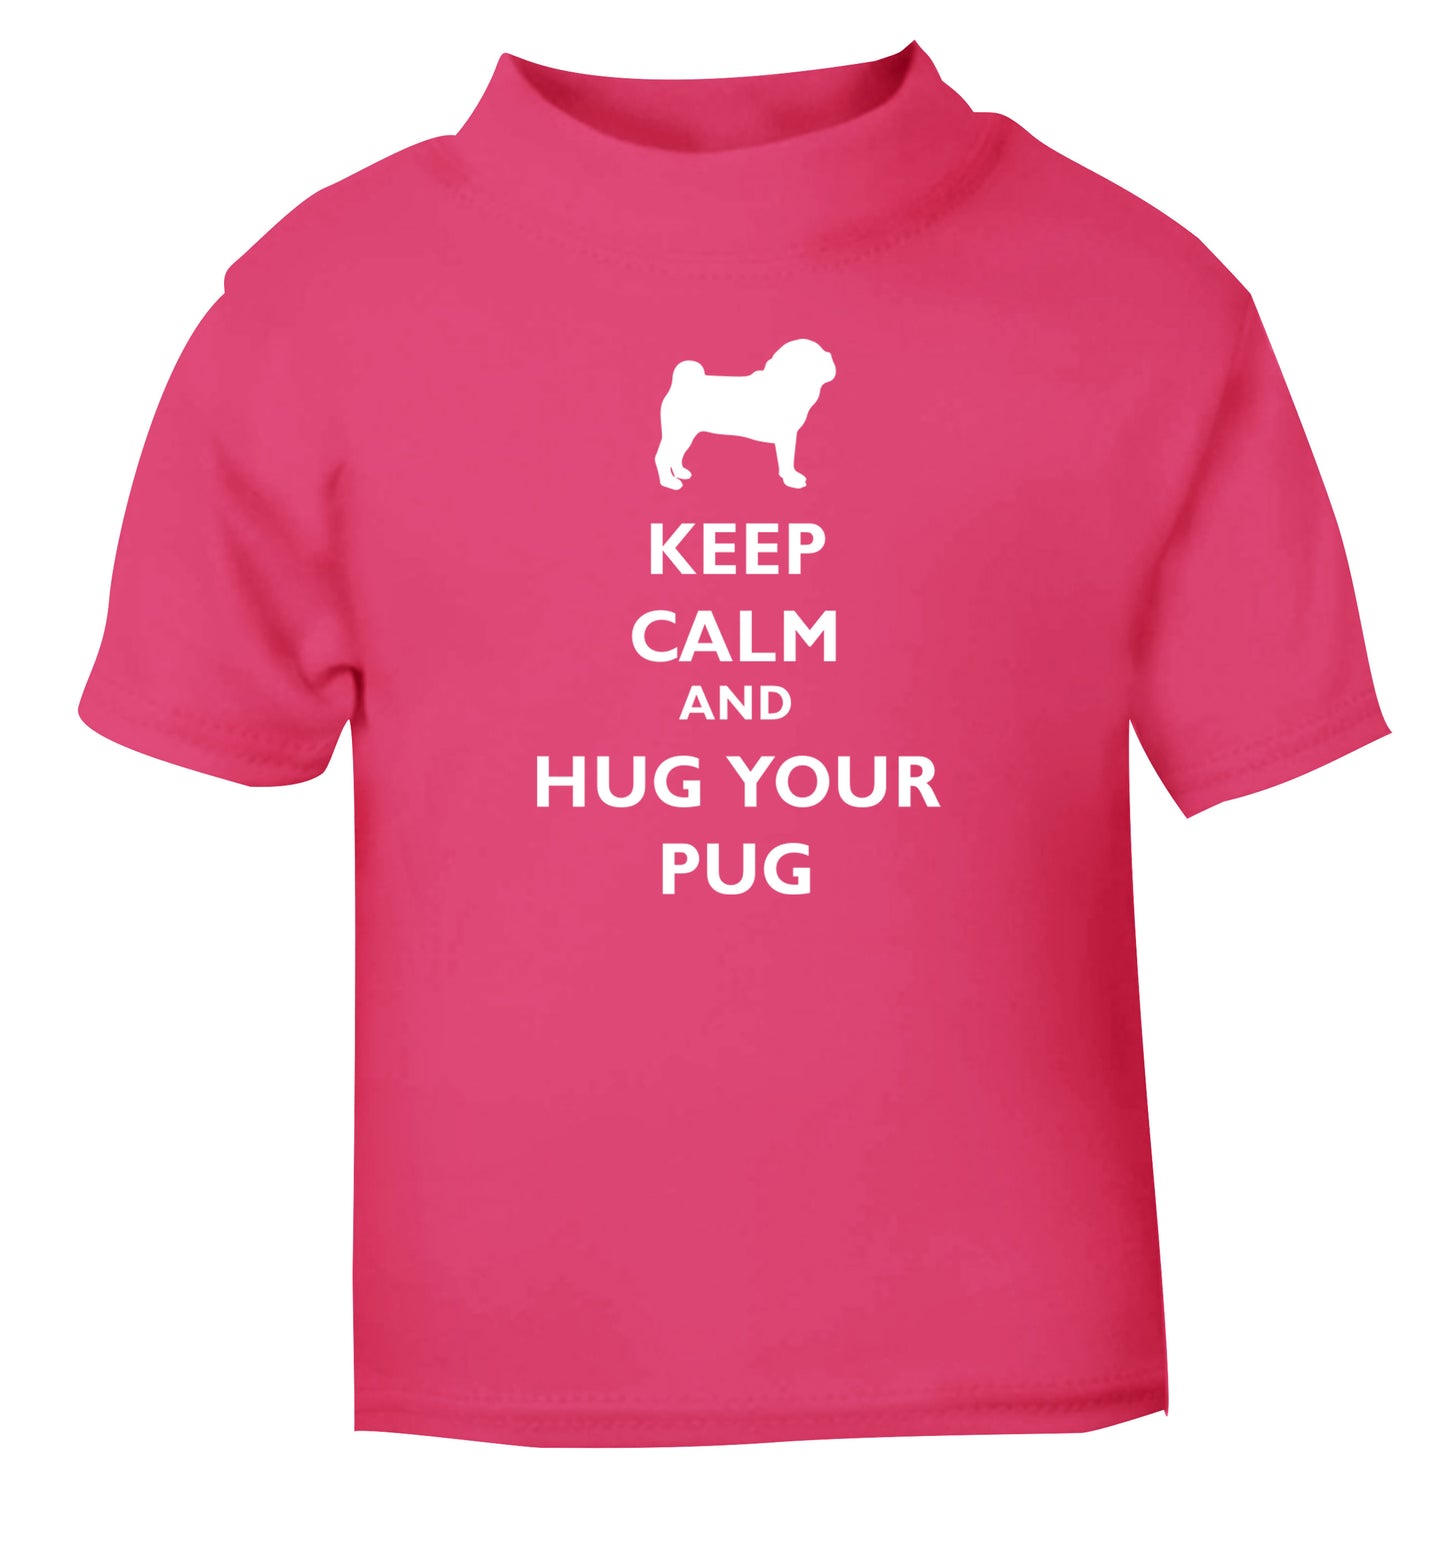 Keep calm and hug your pug pink Baby Toddler Tshirt 2 Years